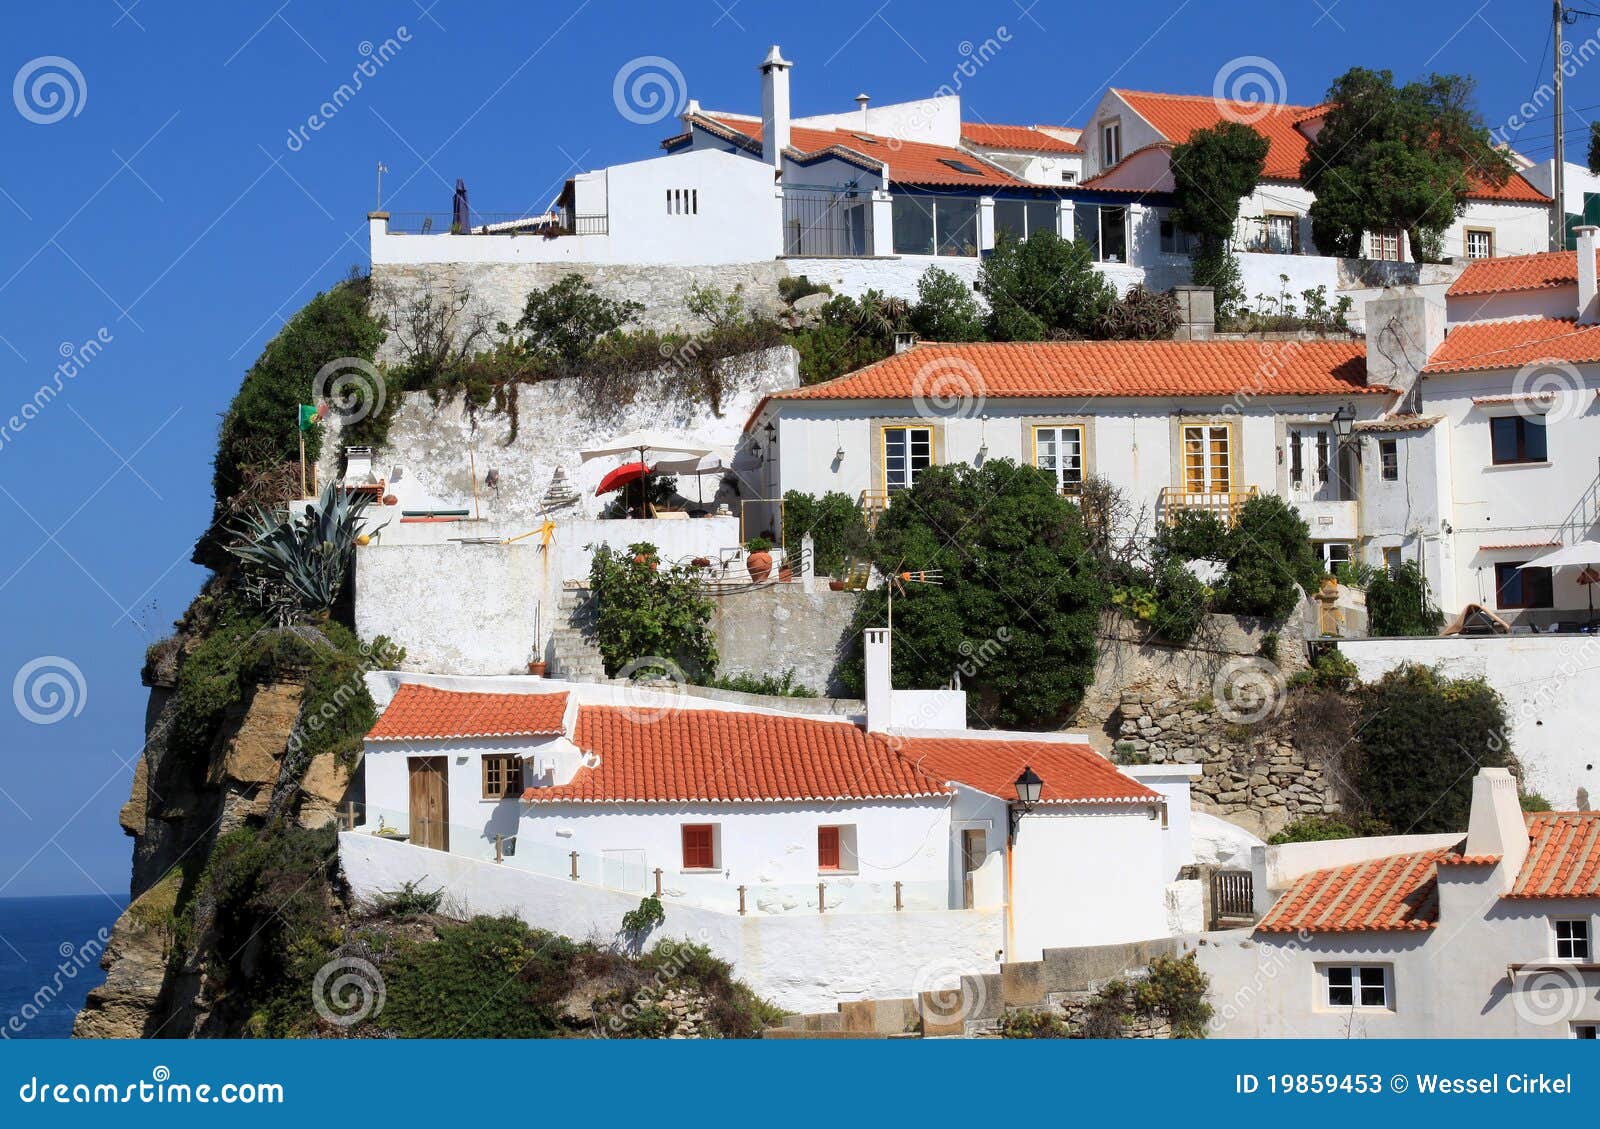 white houses of azenhas do mar, portugal